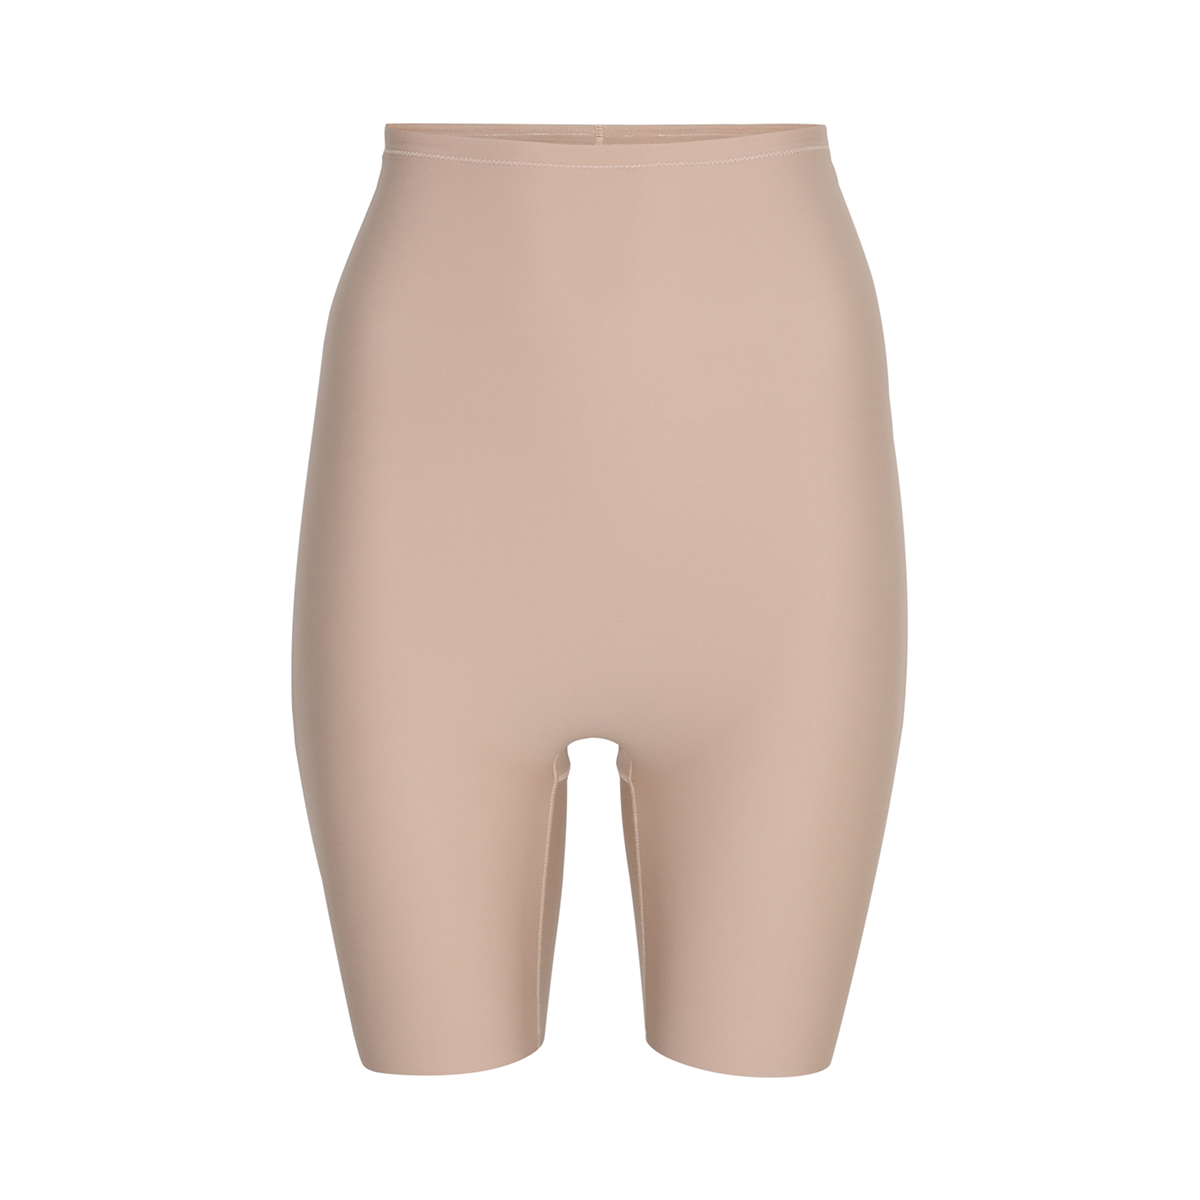 Decoy Shapewear Shorts, Farbe: Sand, Größe: S, Damen von Decoy